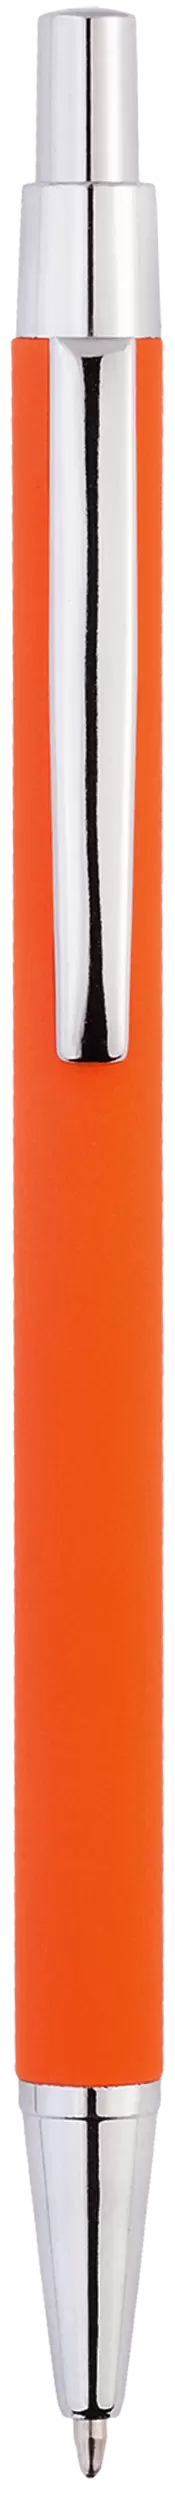 Ручка MOTIVE SOFT Оранжевая 1100.05